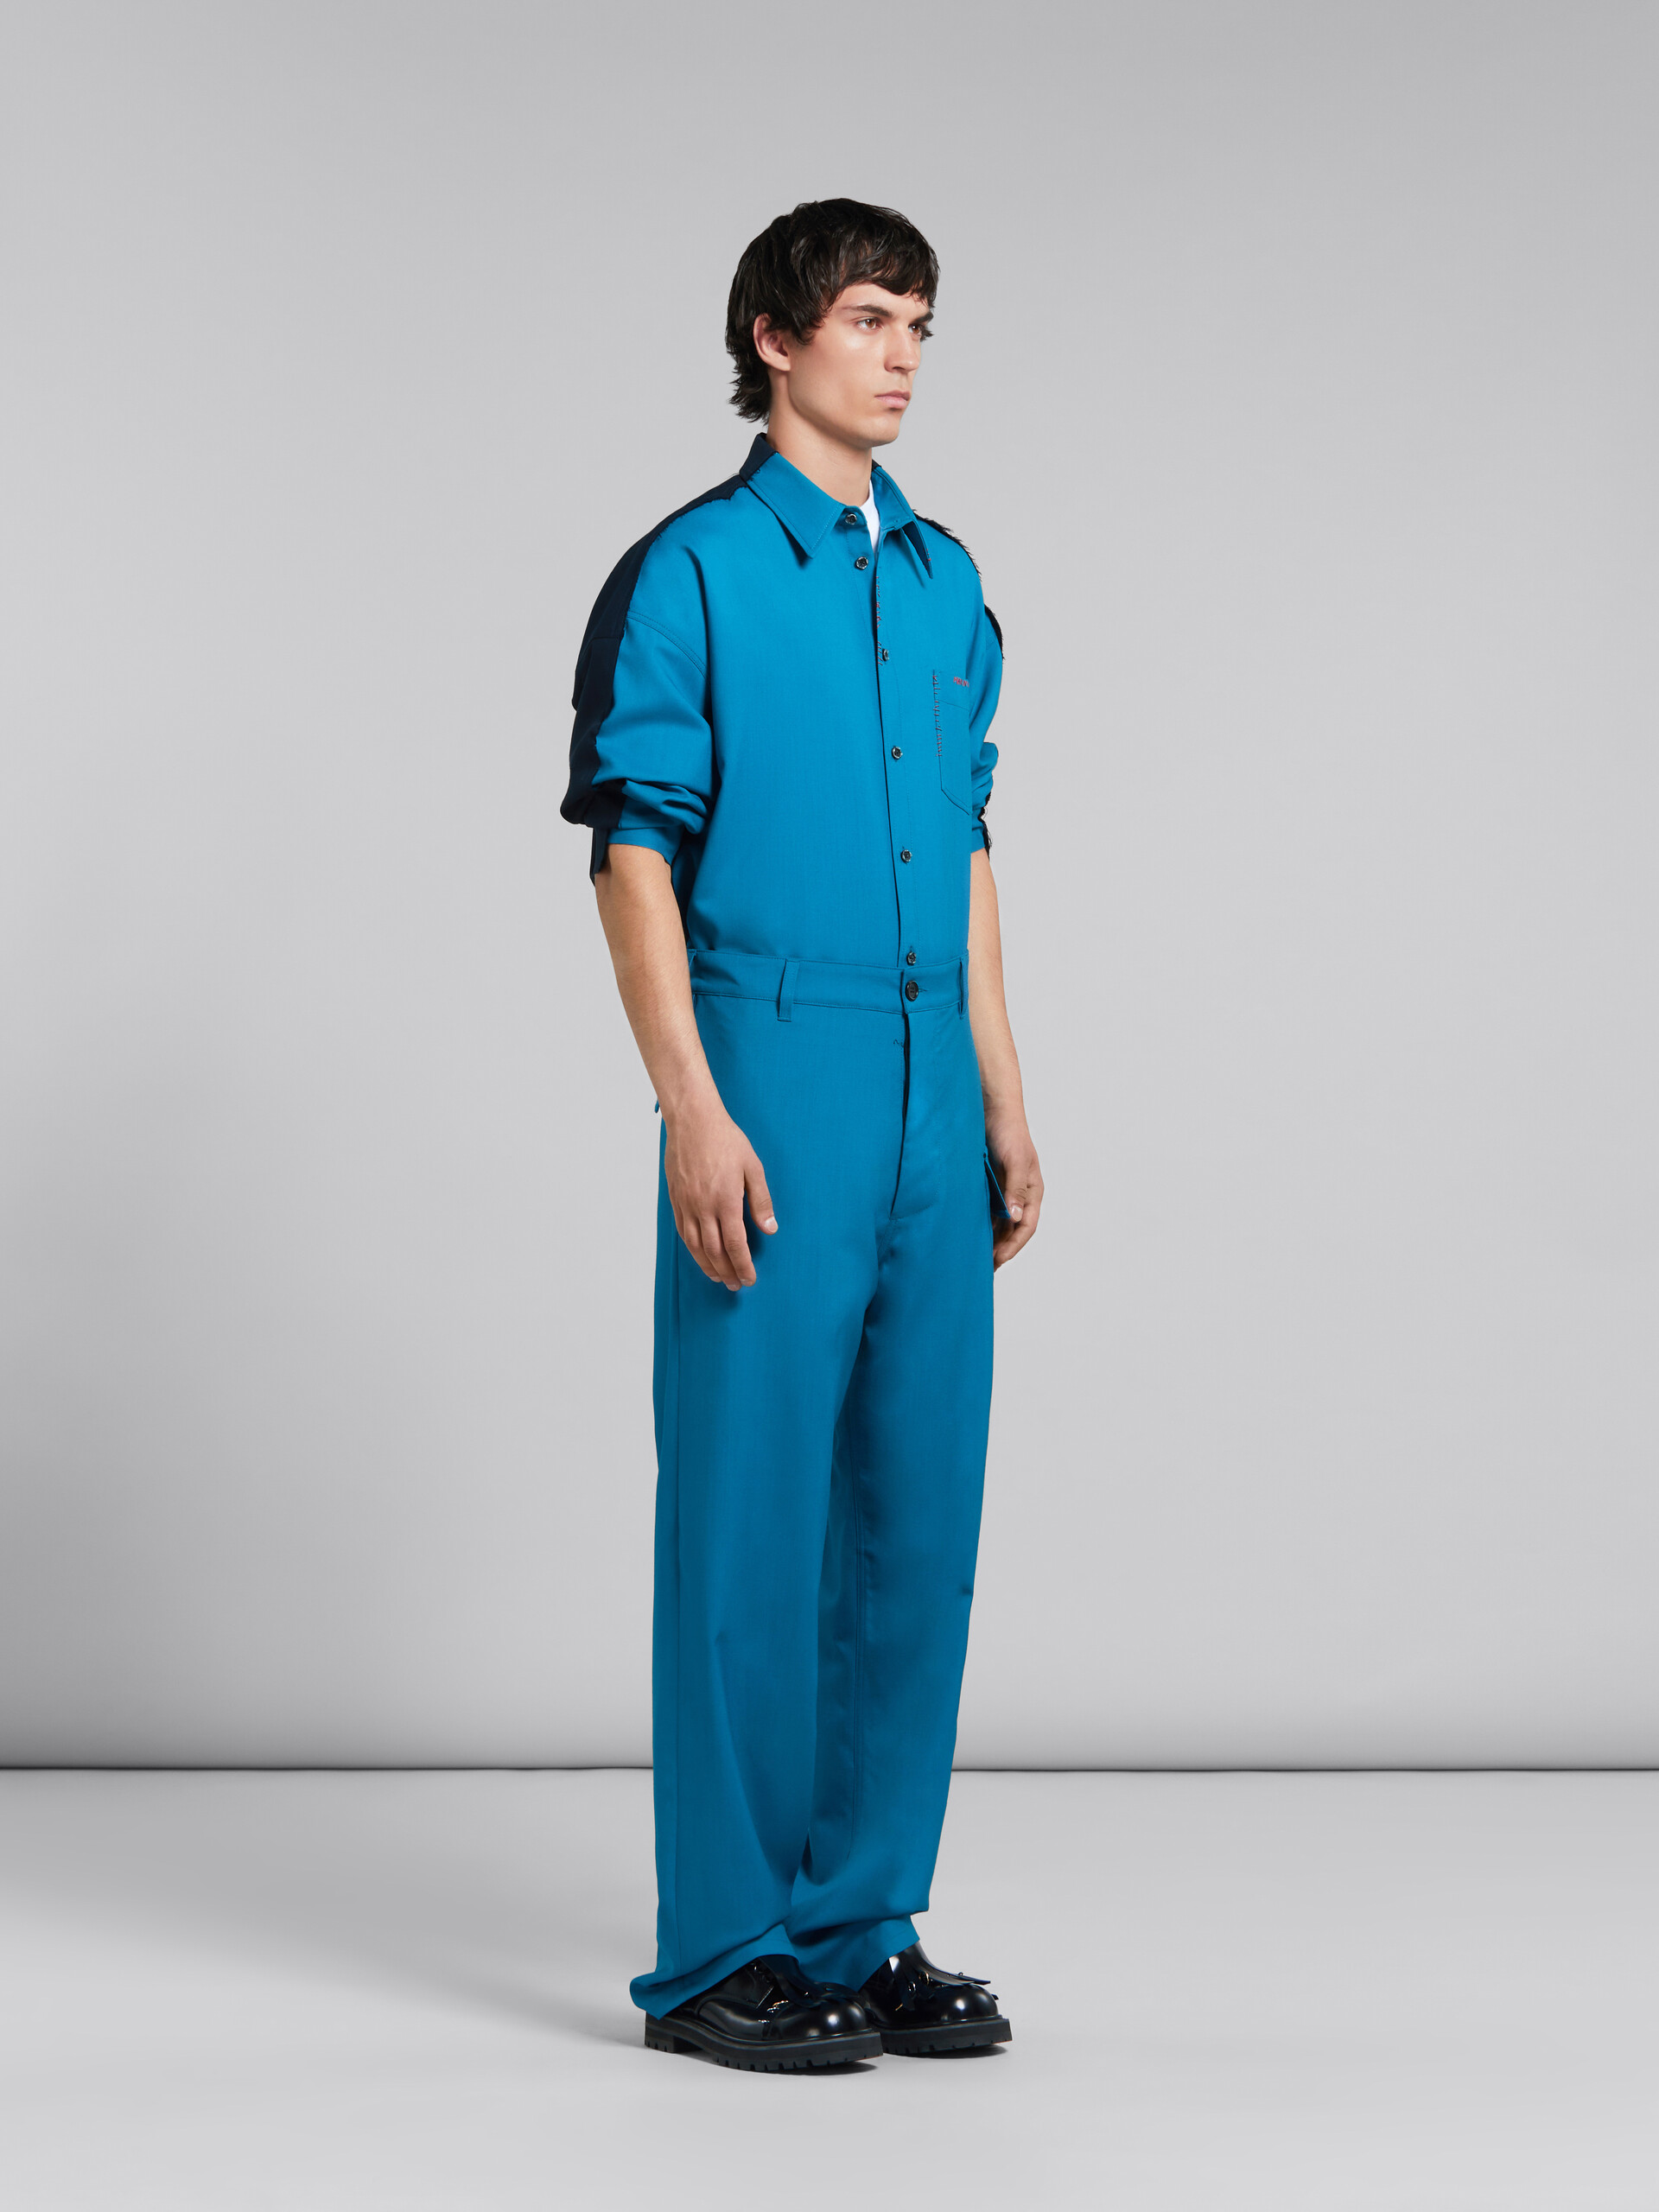 Blaugrüne Hose aus Tropenwolle mit Utility-Tasche - Hosen - Image 5